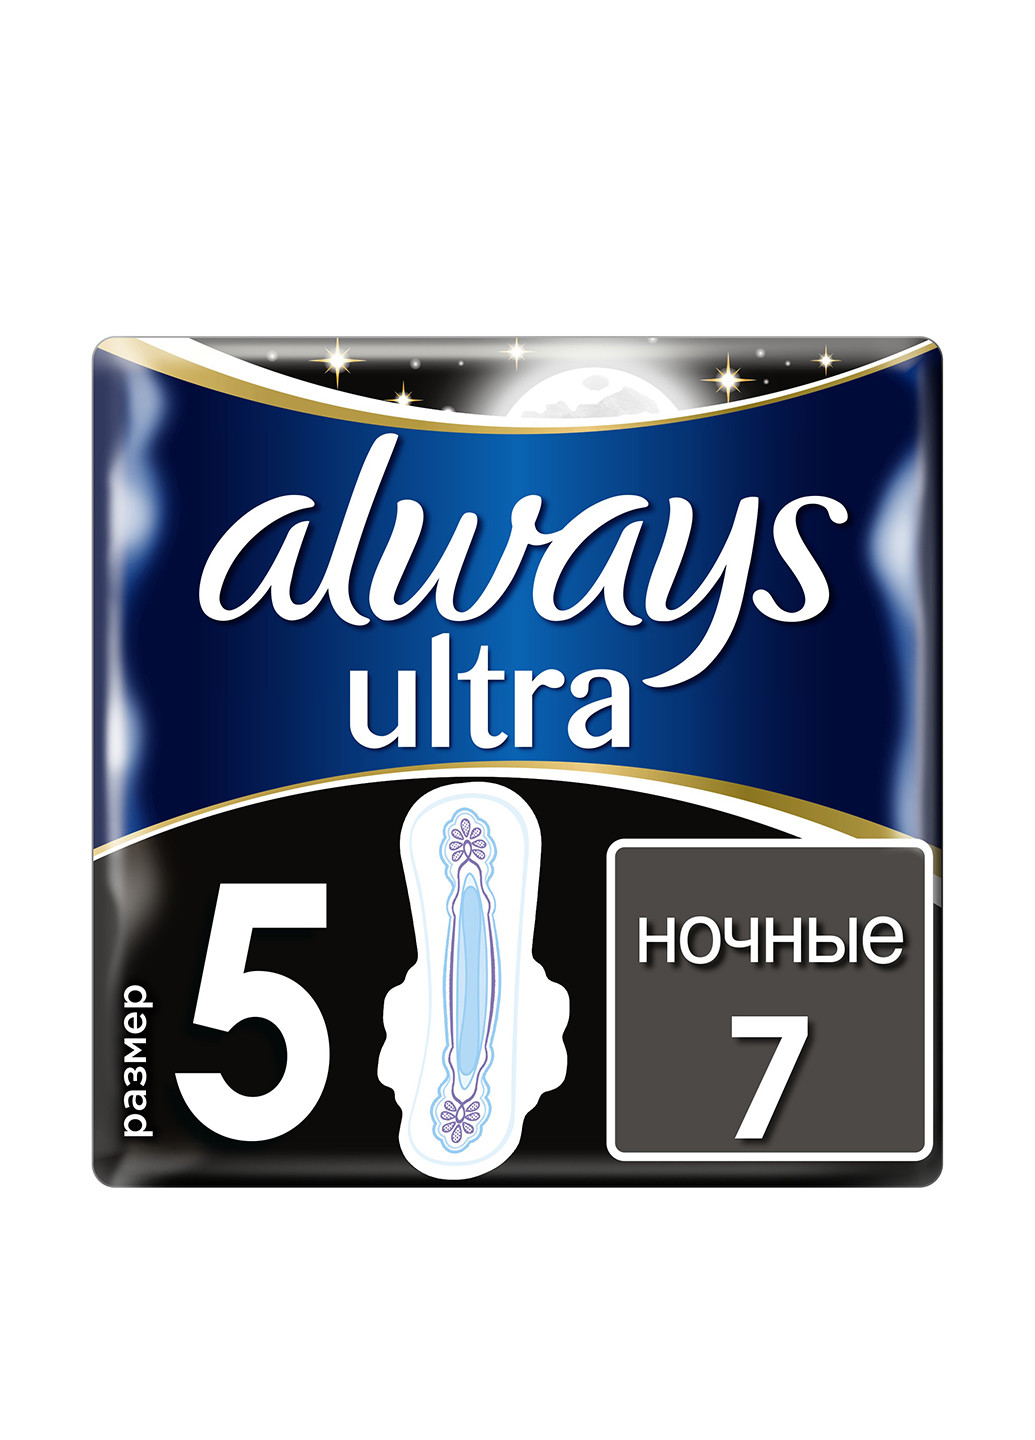 Гигиенические прокладки Ultra Secure Night Deo (Размер 5), 7 шт. Always (121590839)